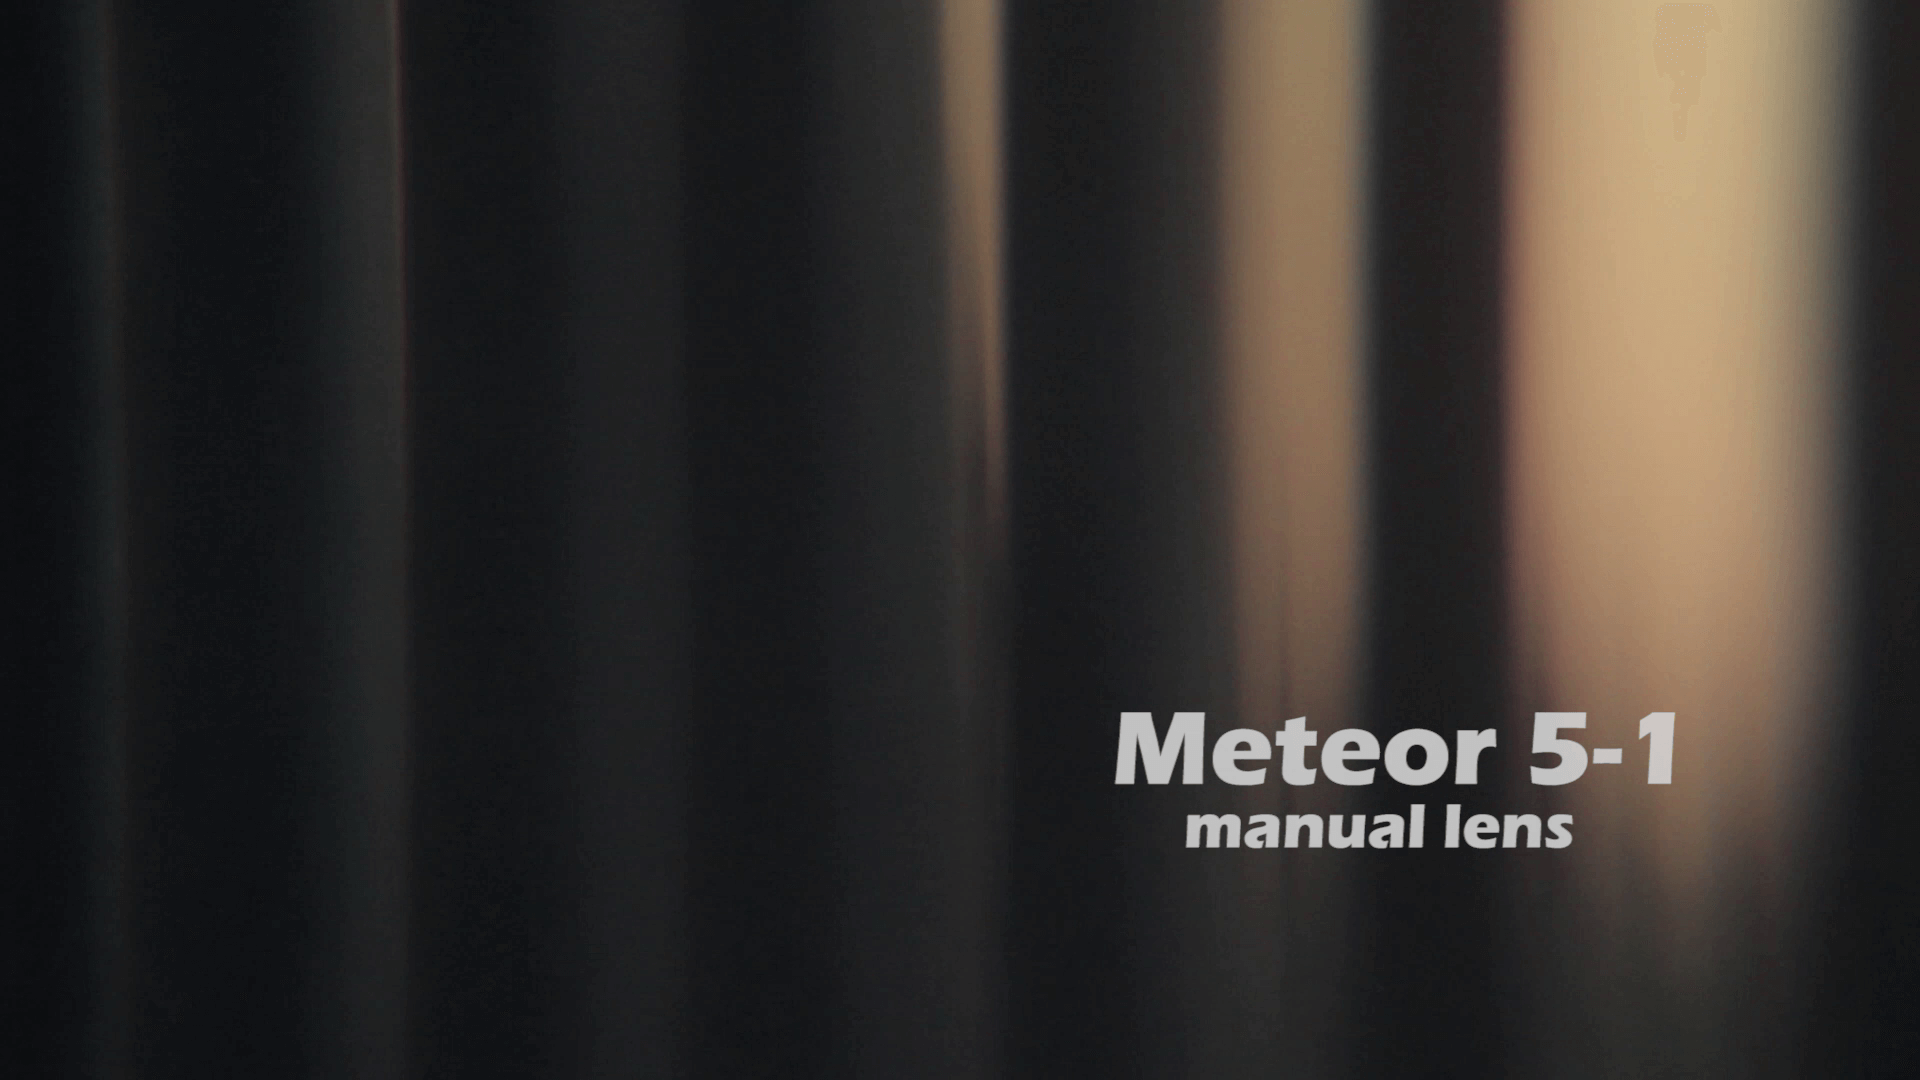 Meteor 5-1